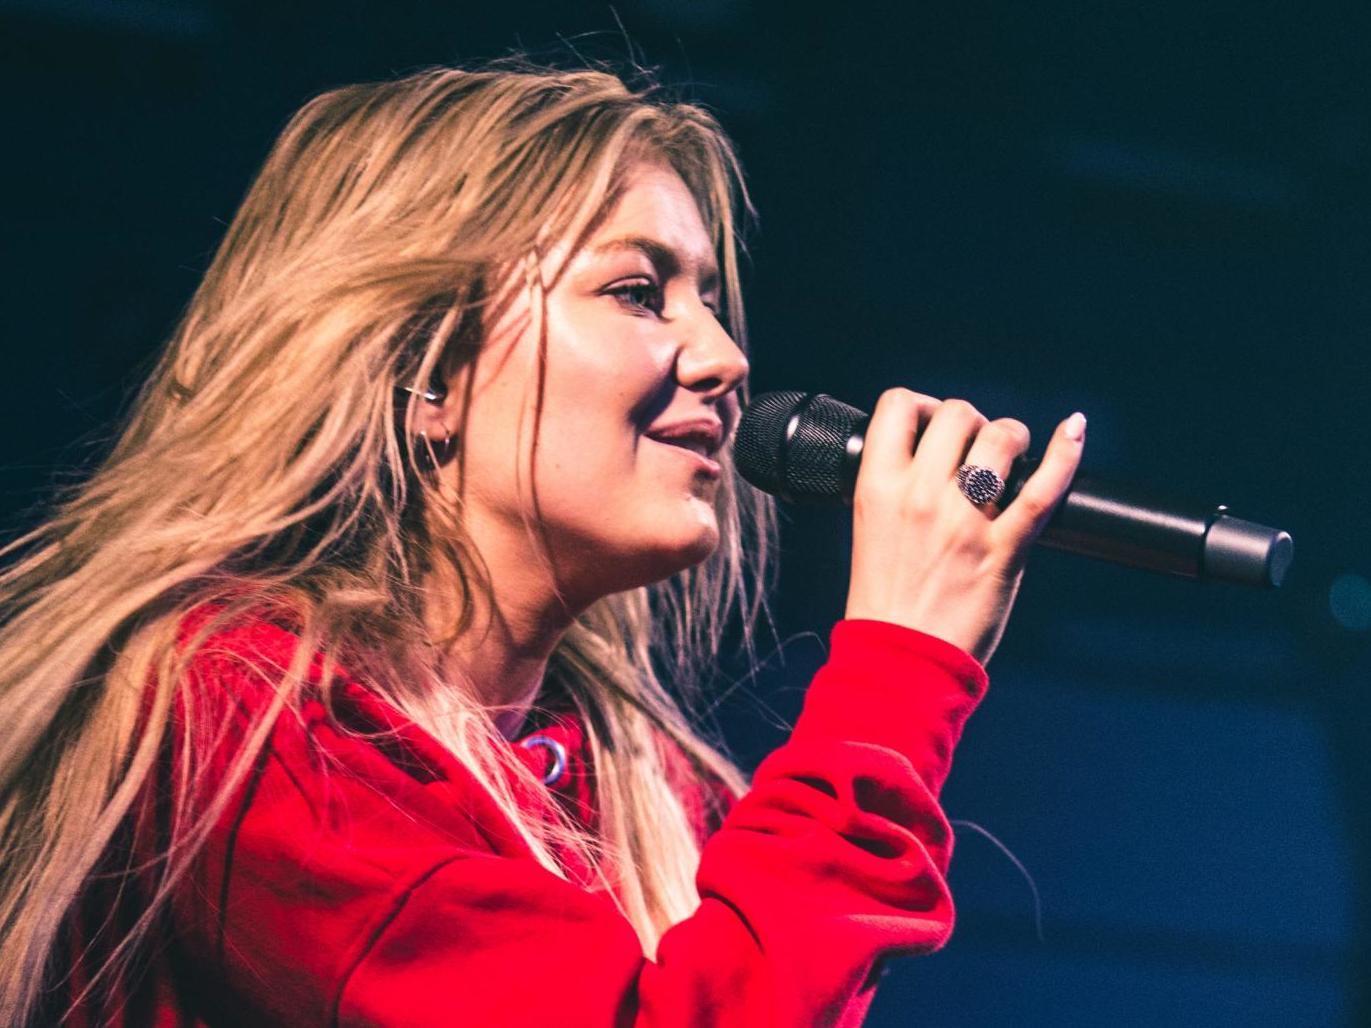 Astrid S in concert at Gorilla in 2017